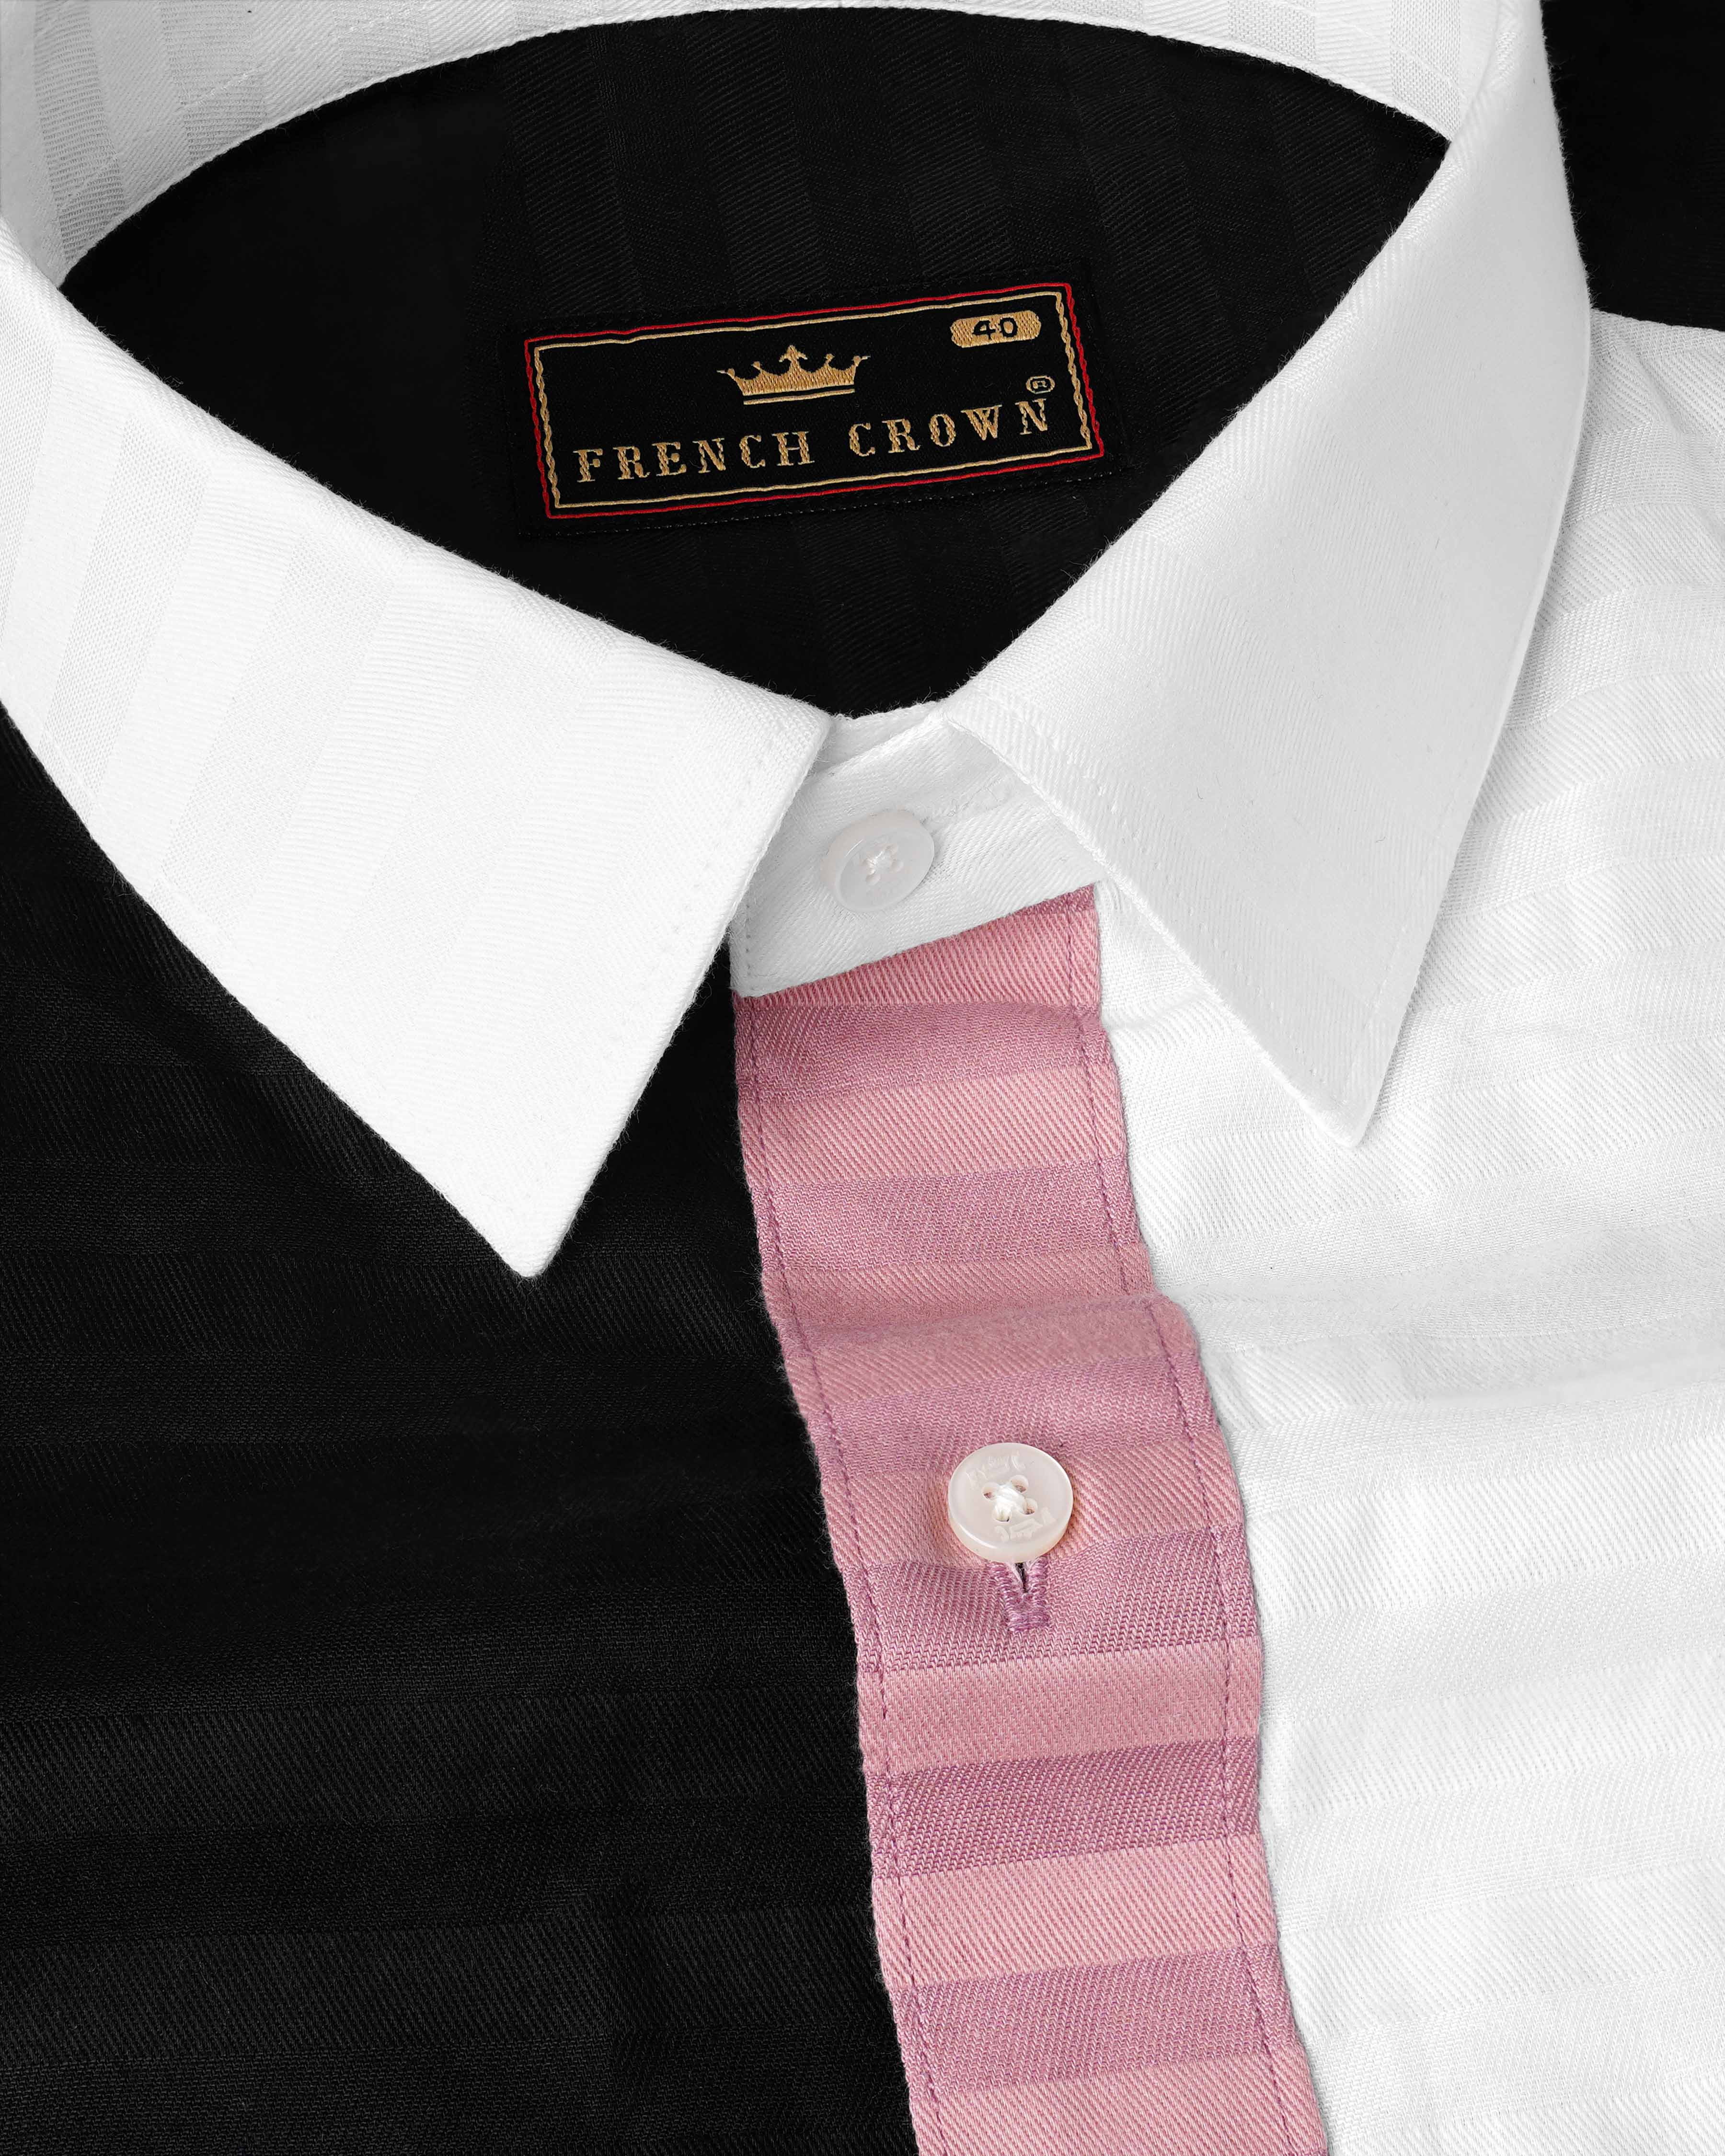 Oriental Pink Striped with Jade Black and White Super Soft Premium Cotton Designer Block Shirt 8045-P102-38, 8045-P102-39, 8045-P102-40, 8045-P102-42, 8045-P102-44, 8045-P102-46, 8045-P102-48, 8045-P102-50, 8045-P102-52